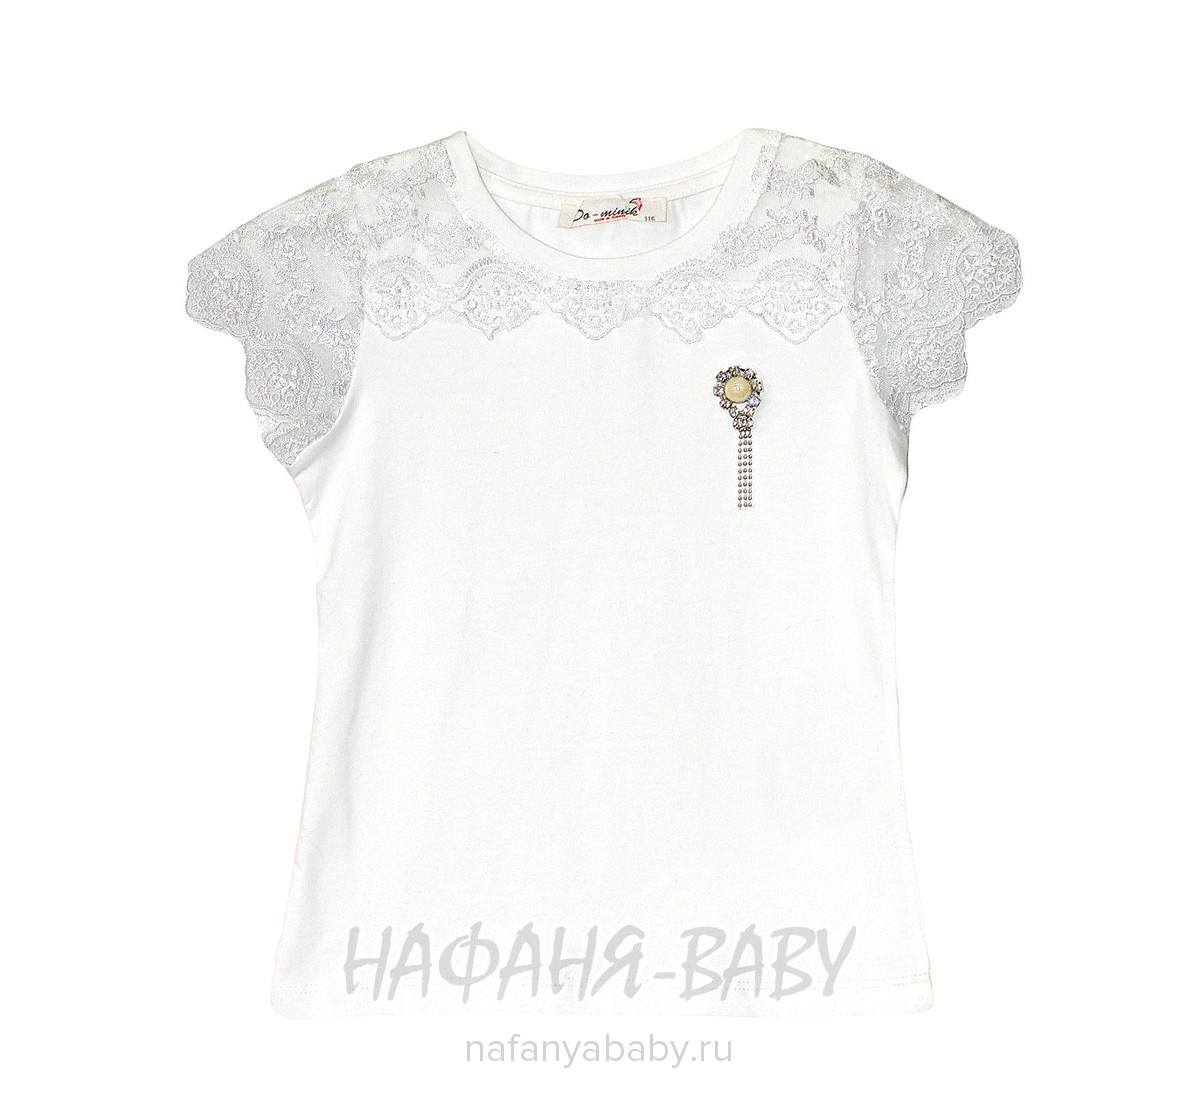 Детская трикотажная блузка DO-MINIK, купить в интернет магазине Нафаня. арт: 9030.